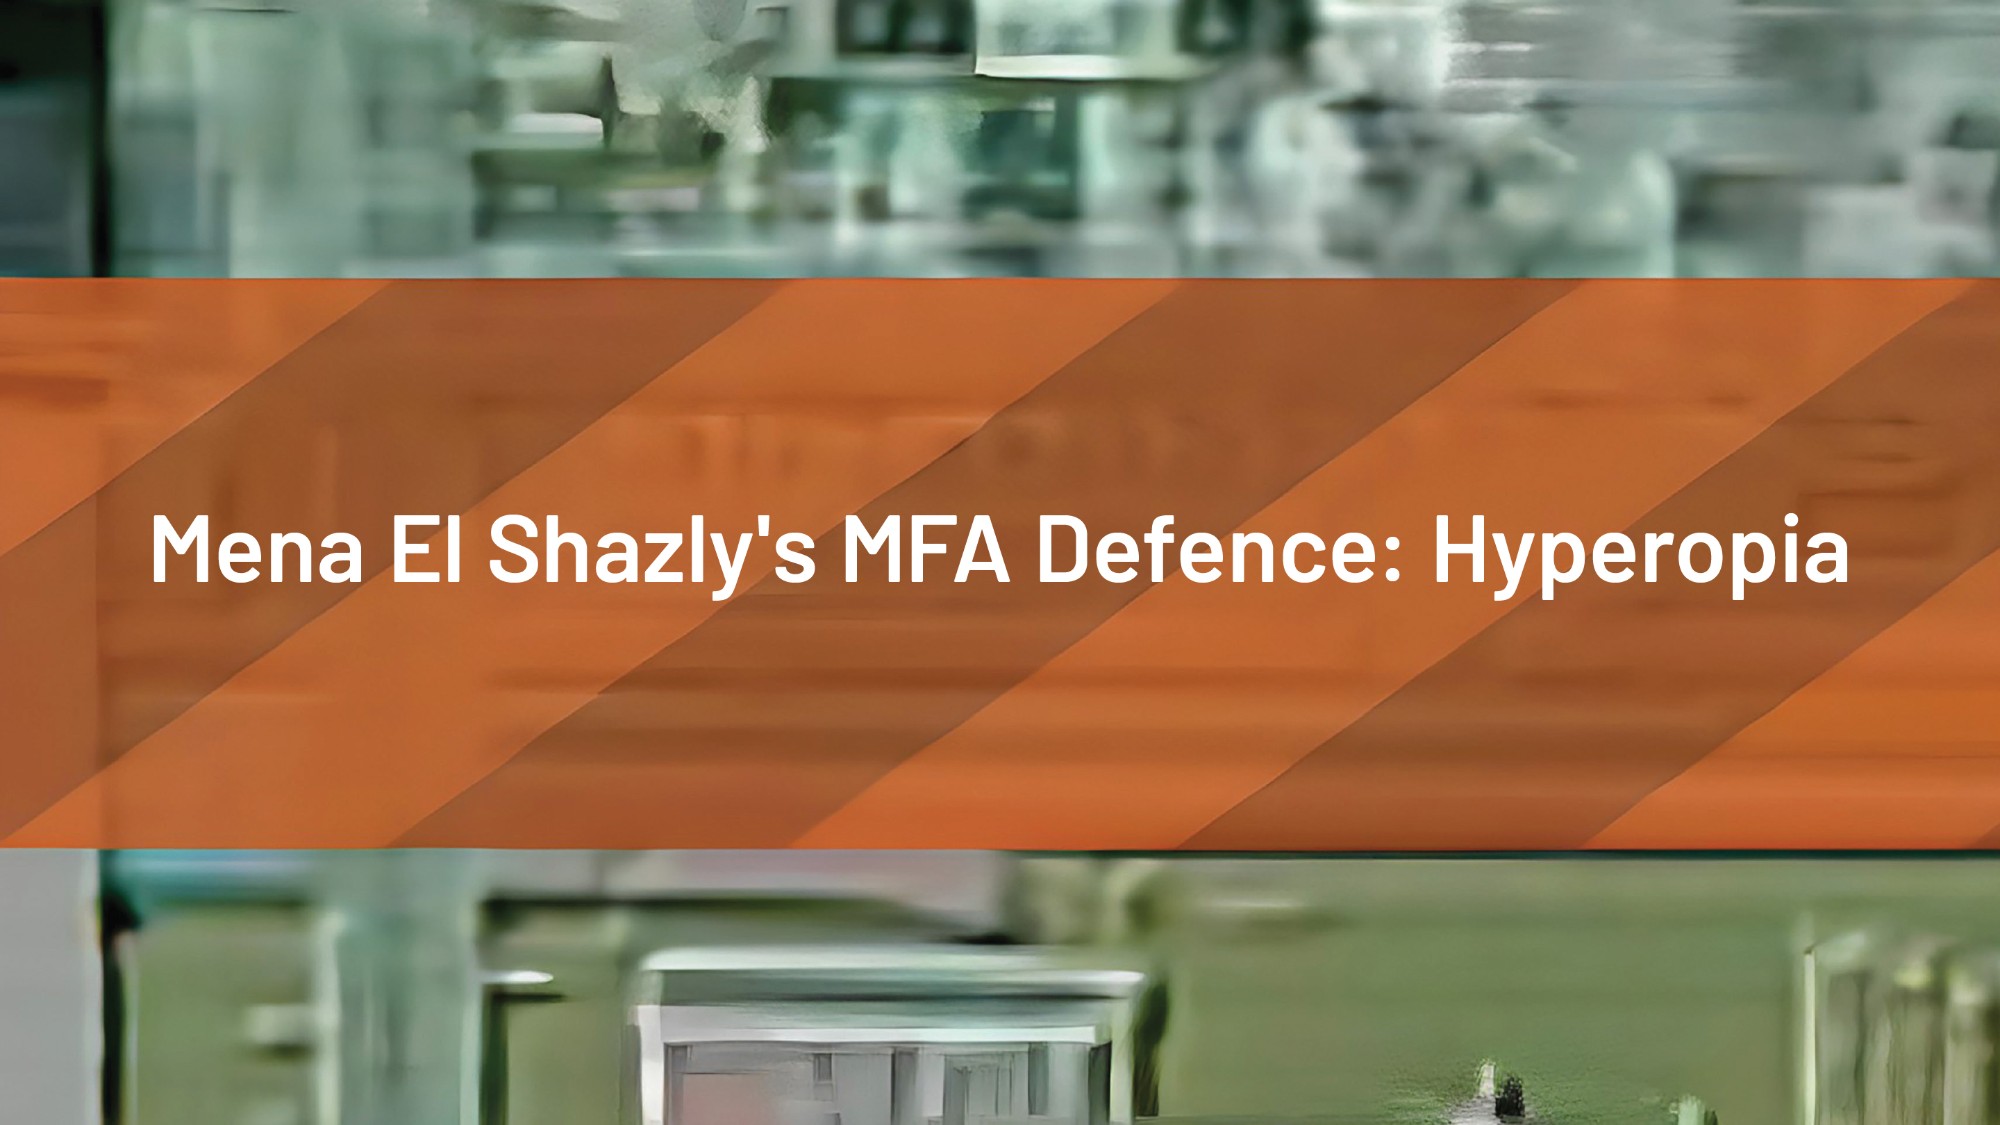 Mena El Shazly's MFA Defence: Hyperopia